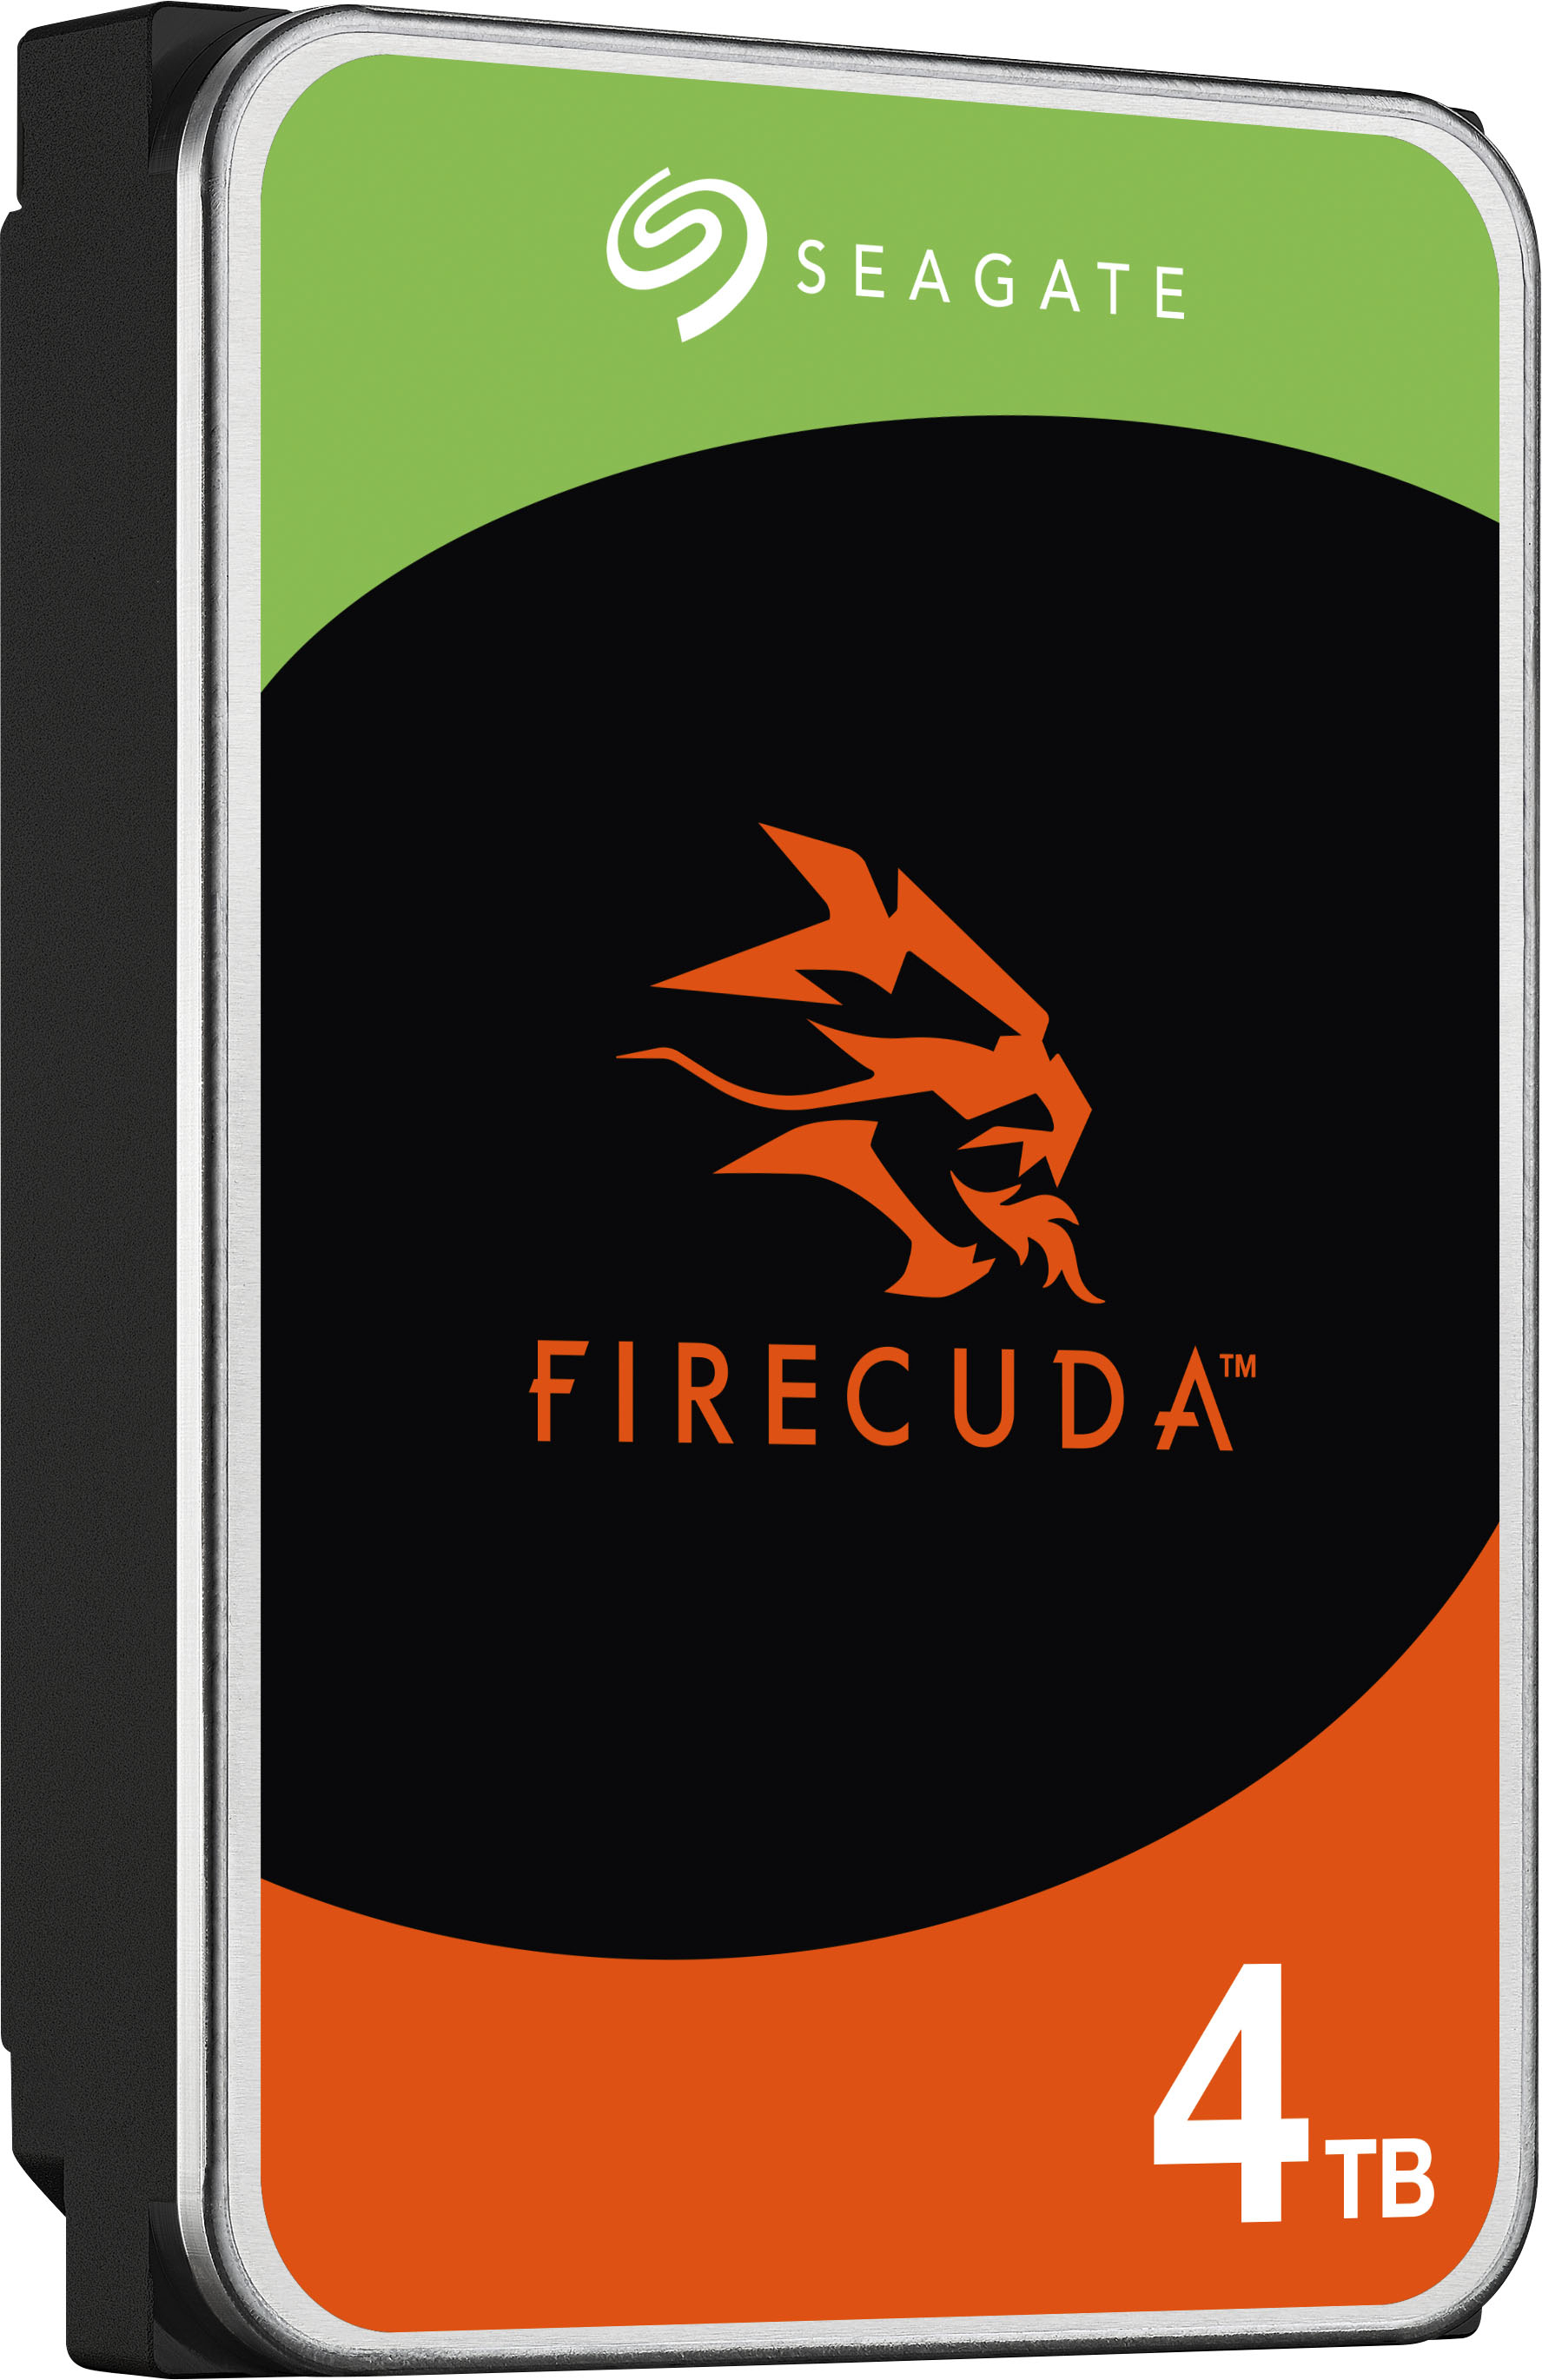 FireCuda HDD